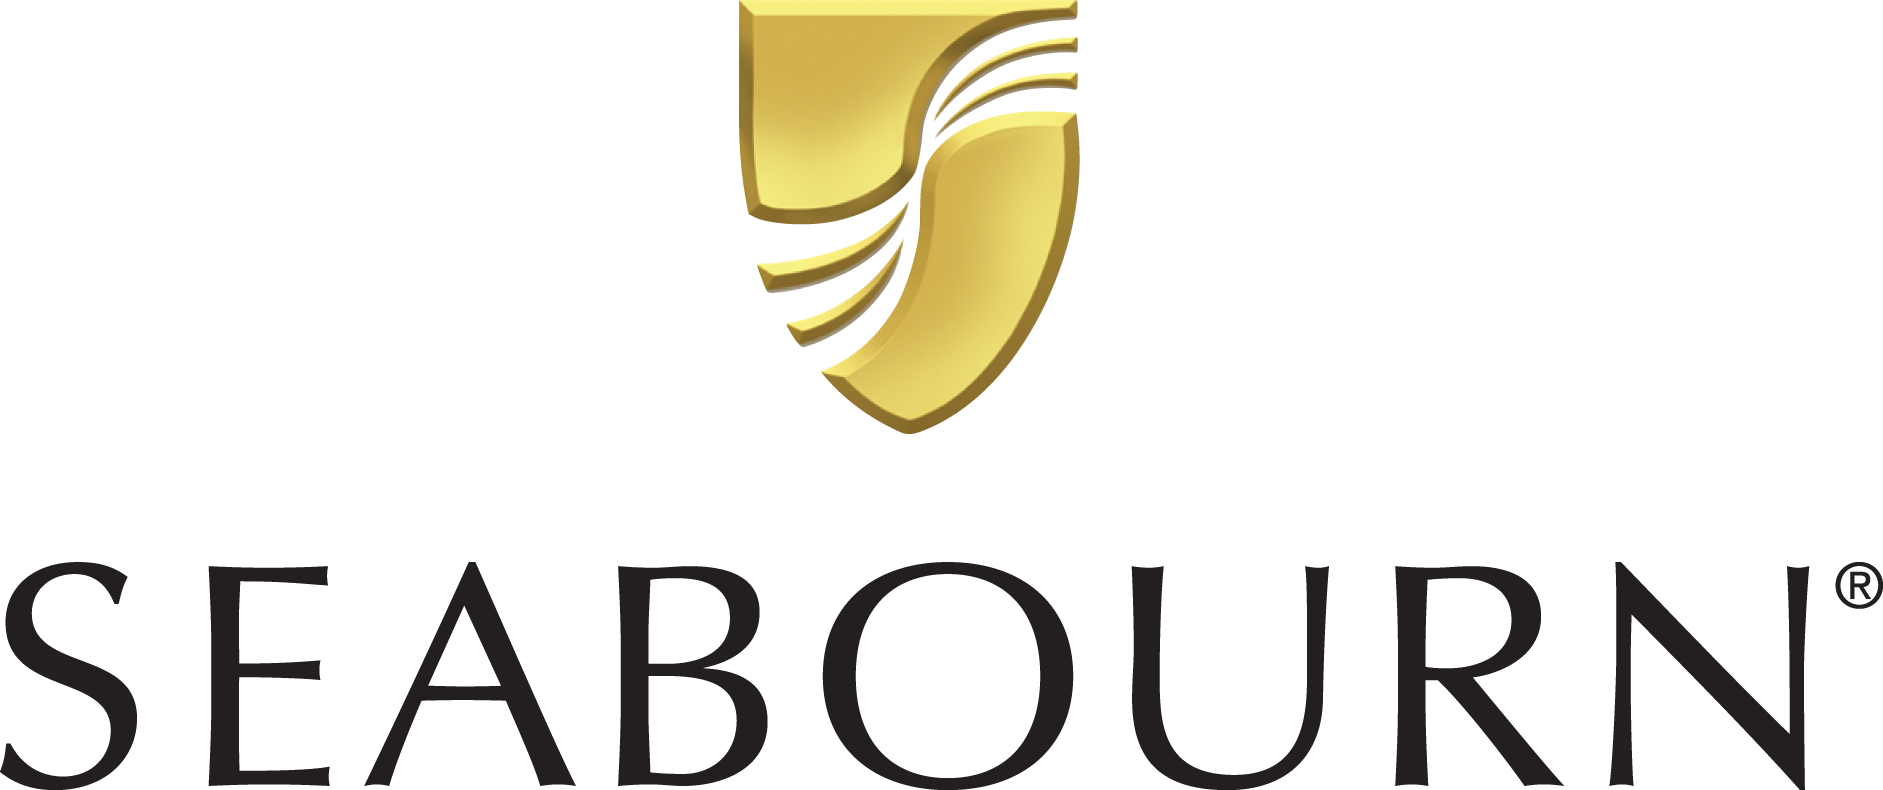 Seabourn Sojourn Reederei Logo